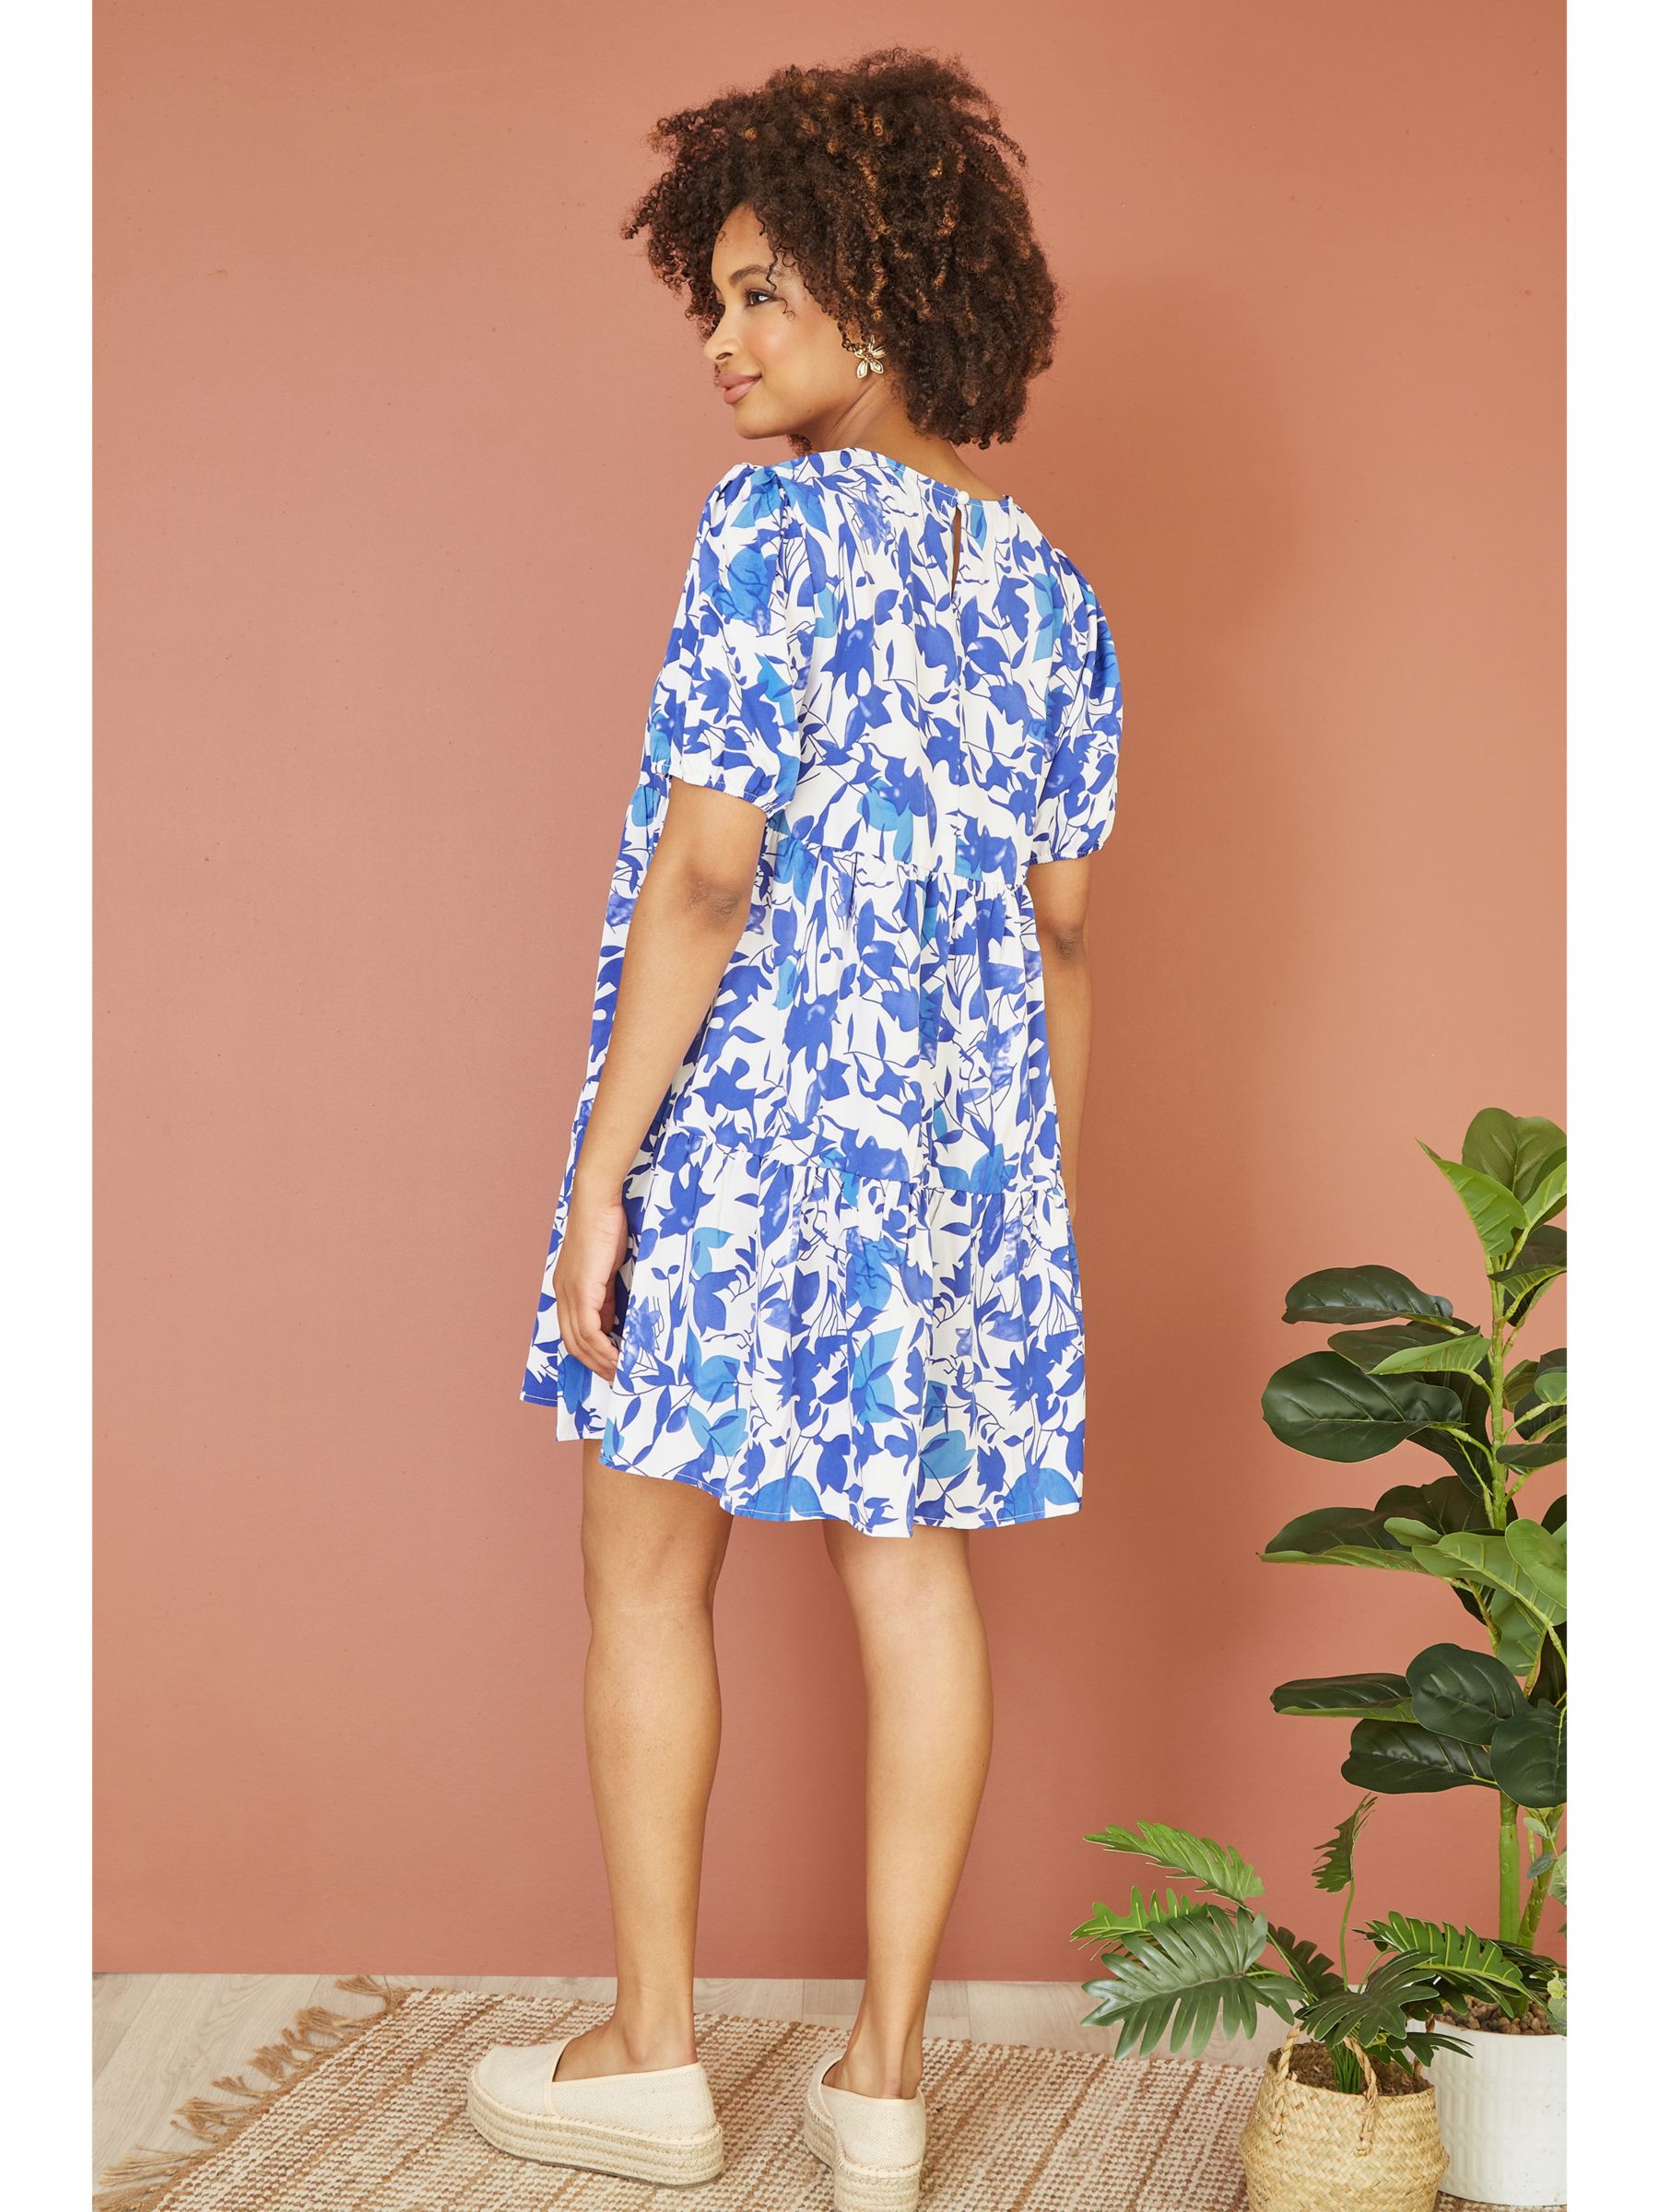 Buy Mela London Leaf Print Tunic Skater Dress, Blue Online at johnlewis.com